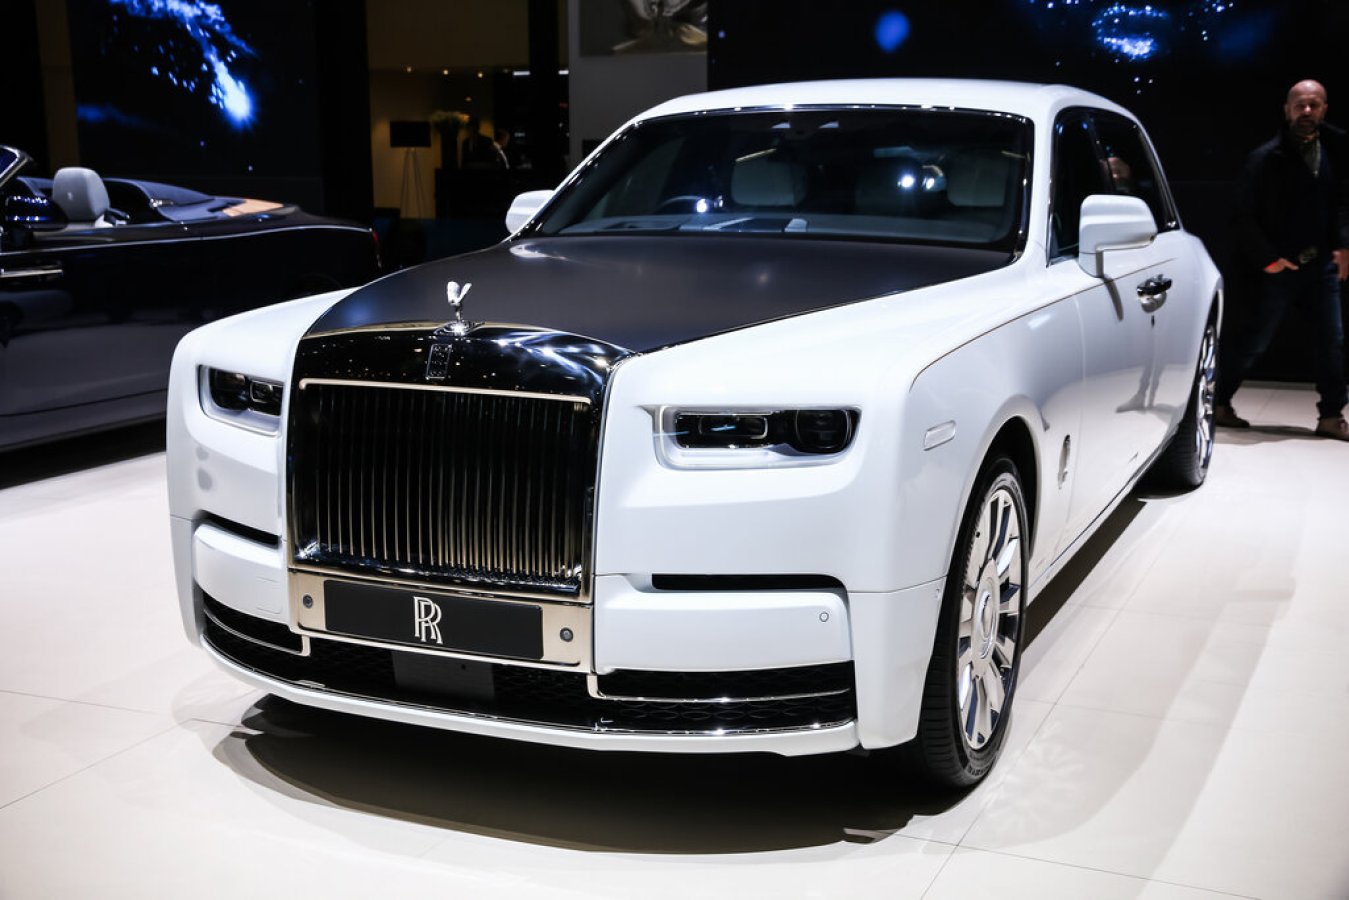 Rolls Royce: Edelleen viimeinen sana luksusautoilussa